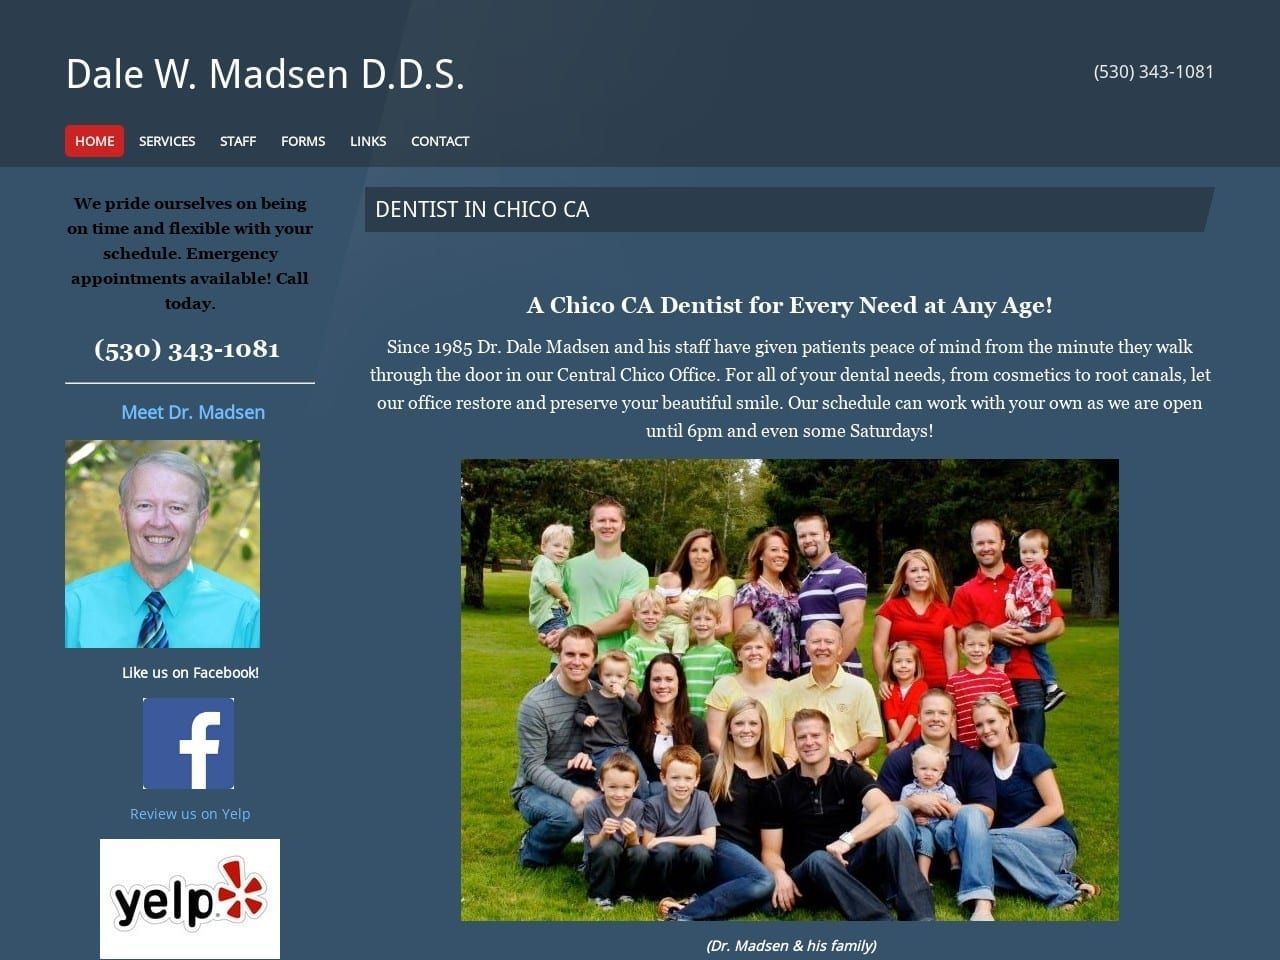 Dale Madsen D.D.S. Website Screenshot from drdalemadsen.jigsy.com